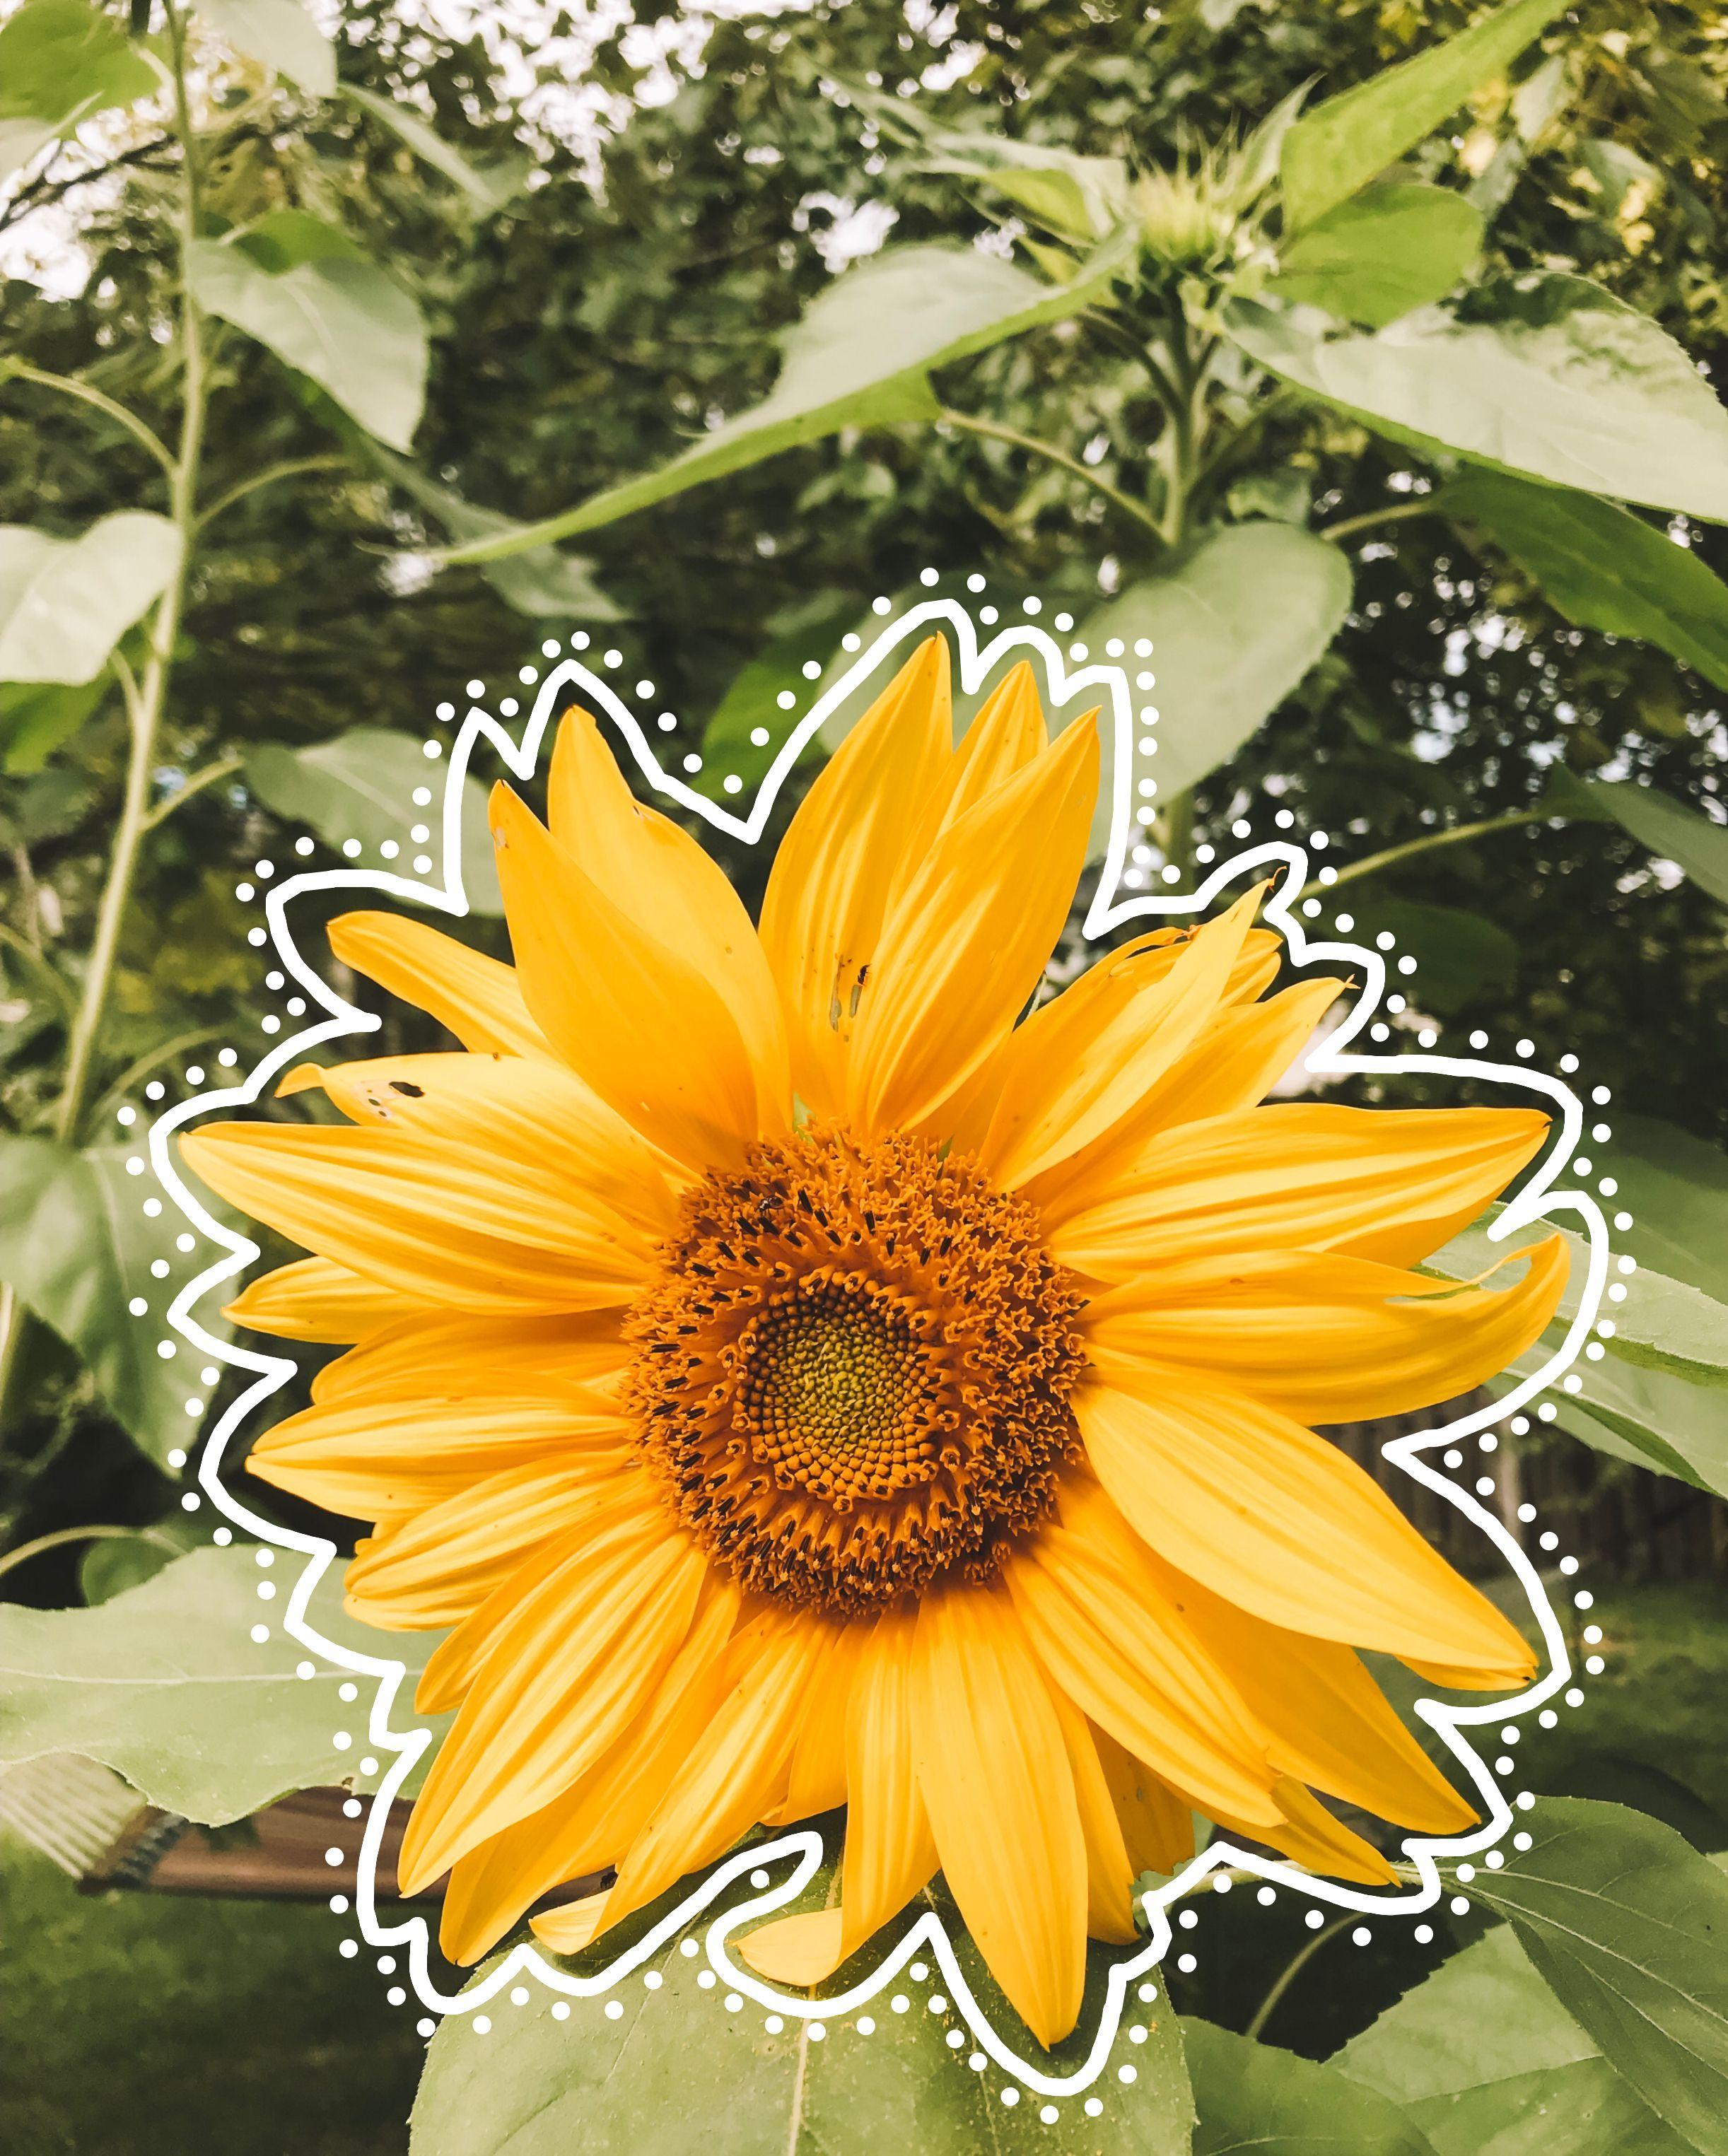 VSCO Sunflower Wallpaper Free VSCO Sunflower Background